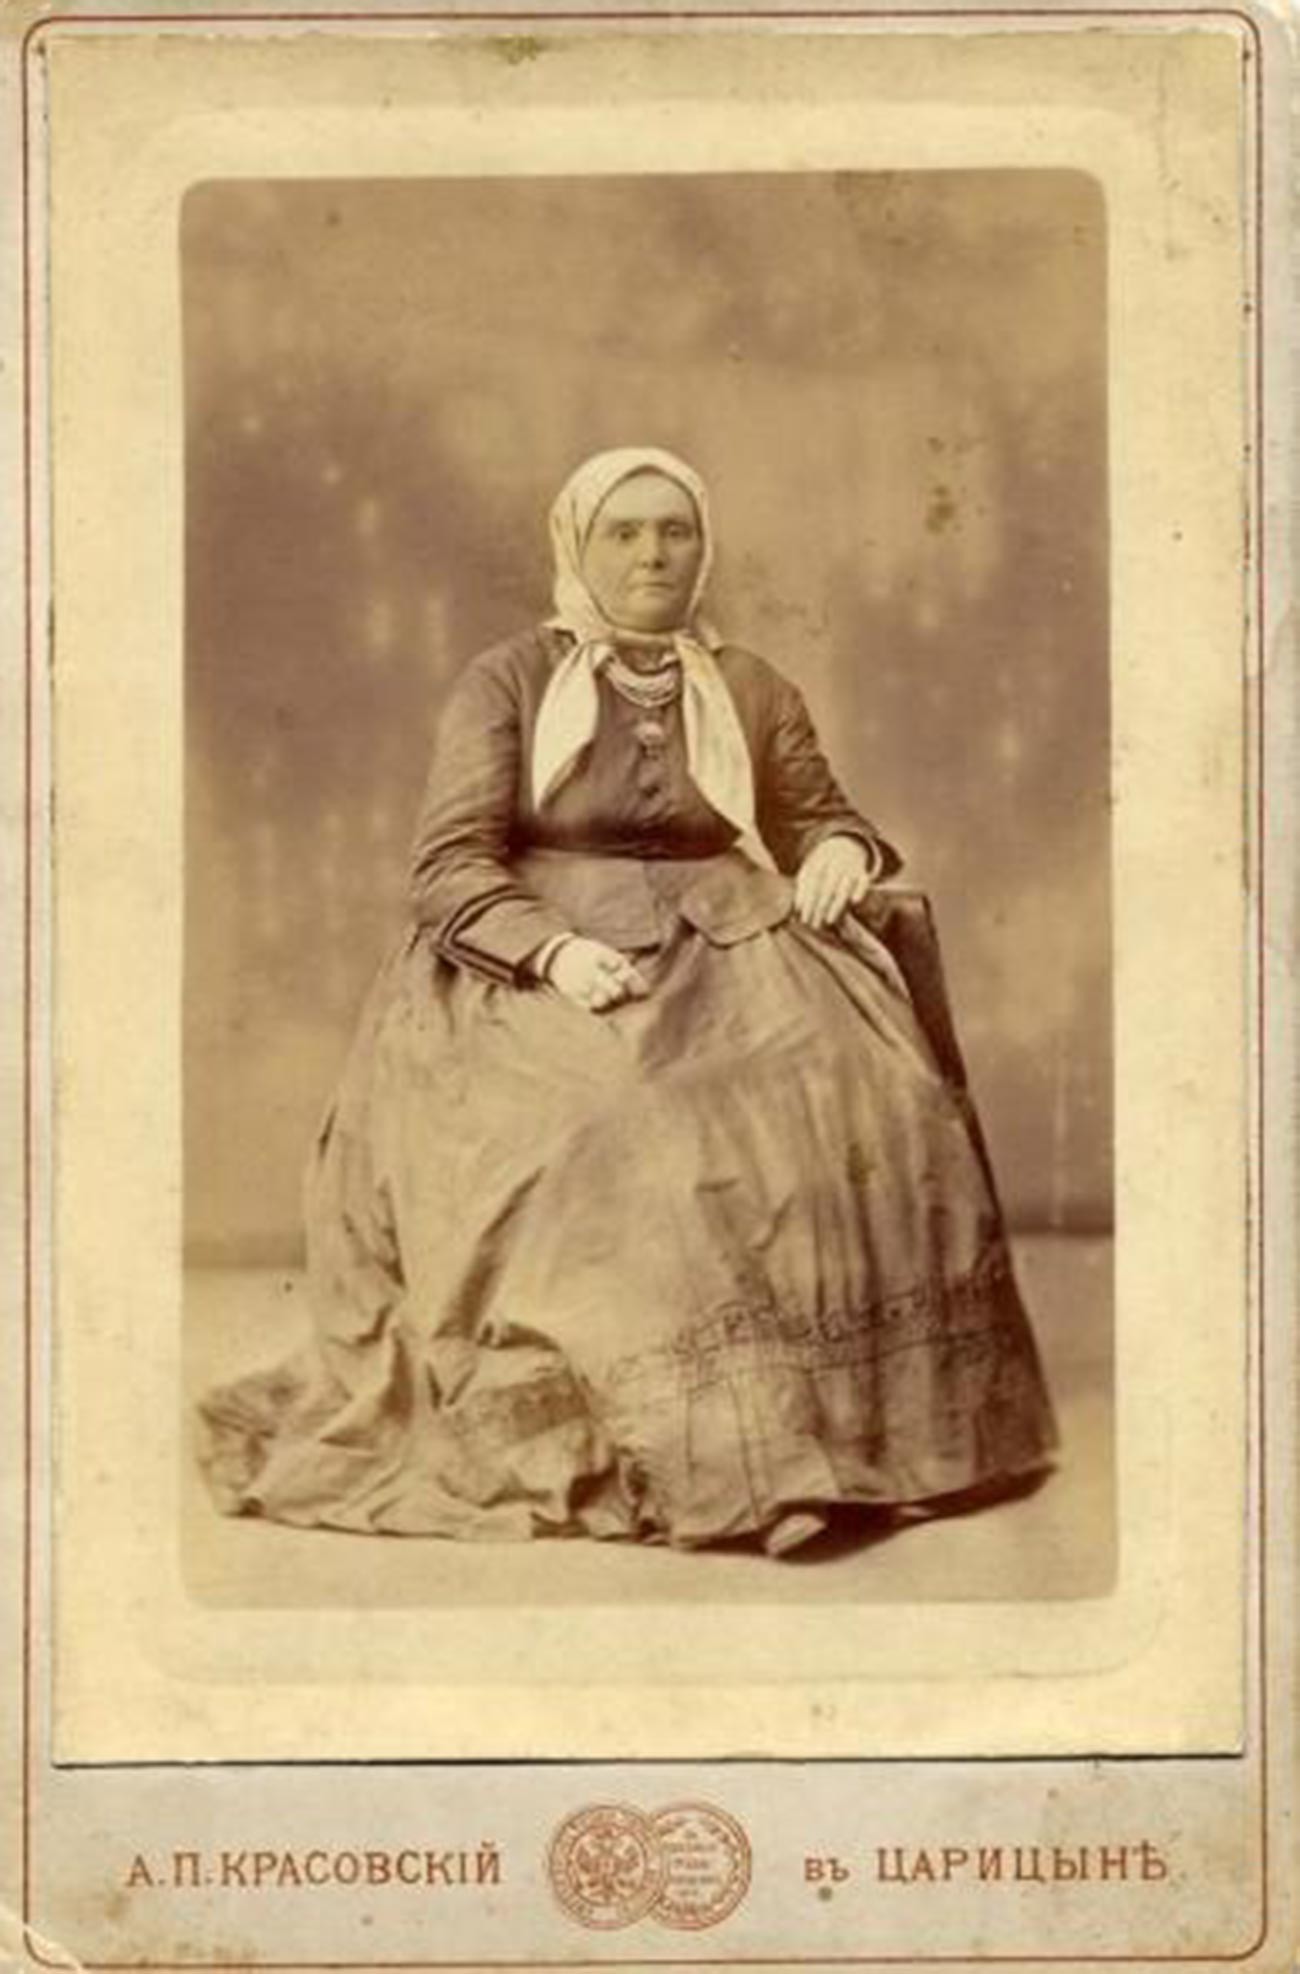 スカーフをかぶってポーズを取る老女。1870年代